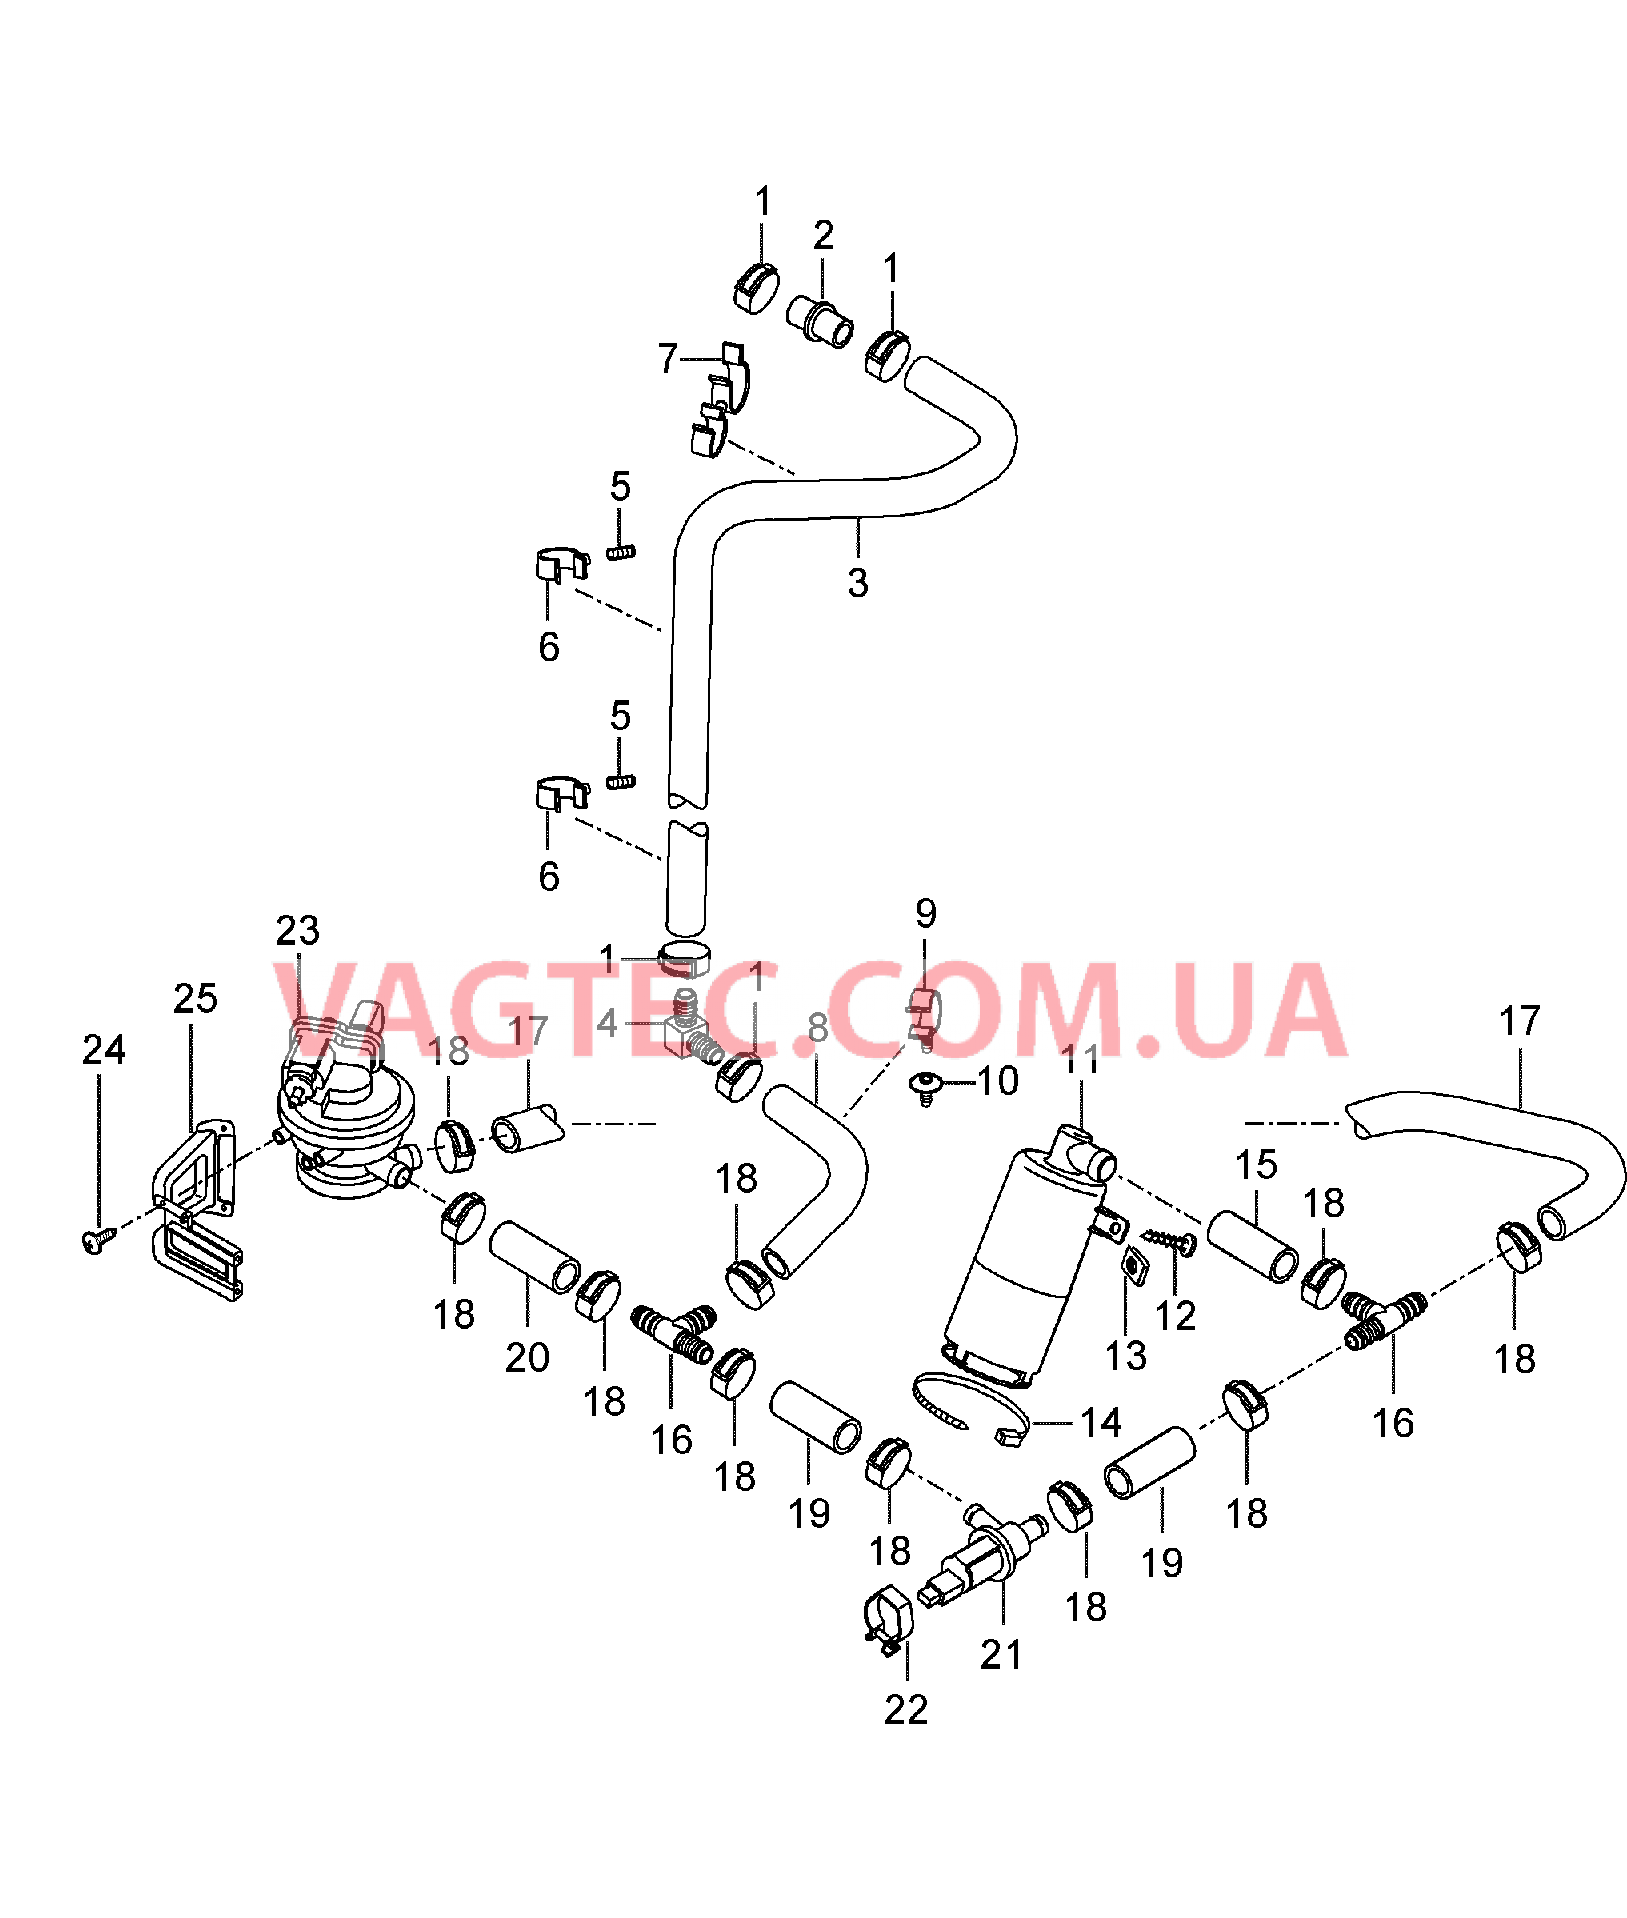 201-025 Резервуар с активир.углем, Воздушный фильтр, Насос, Диагностика
						
						I664 для PORSCHE CarreraGT 2004-2006-USA